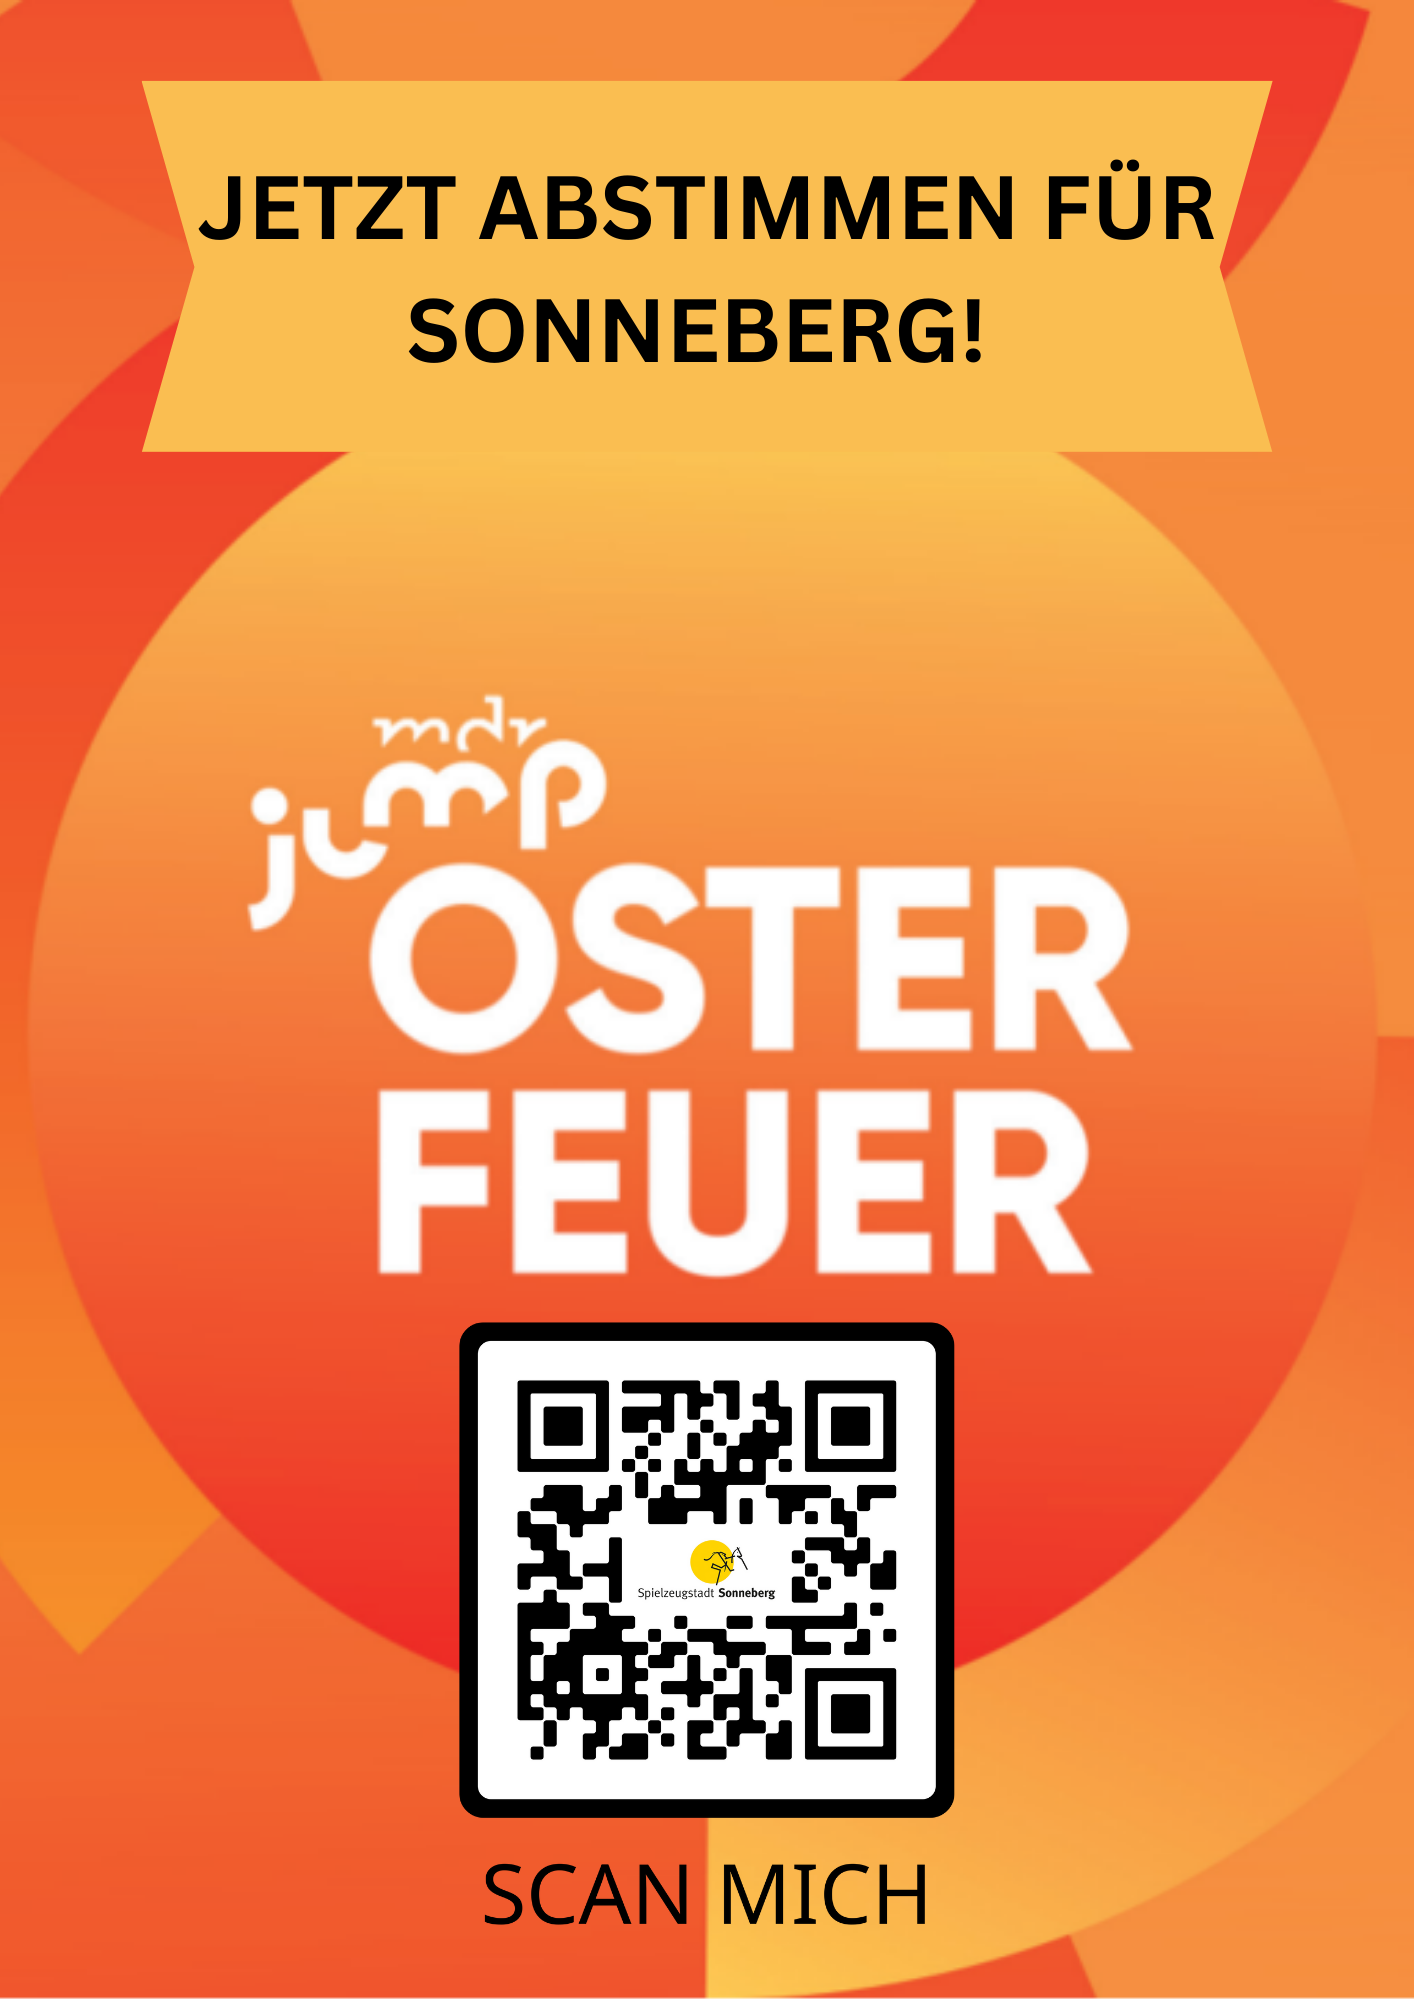 Eine orange Grafik mit der Aufschrift: mdr jump Osterfeuer, Jetzt abstimmen für Sonneberg.